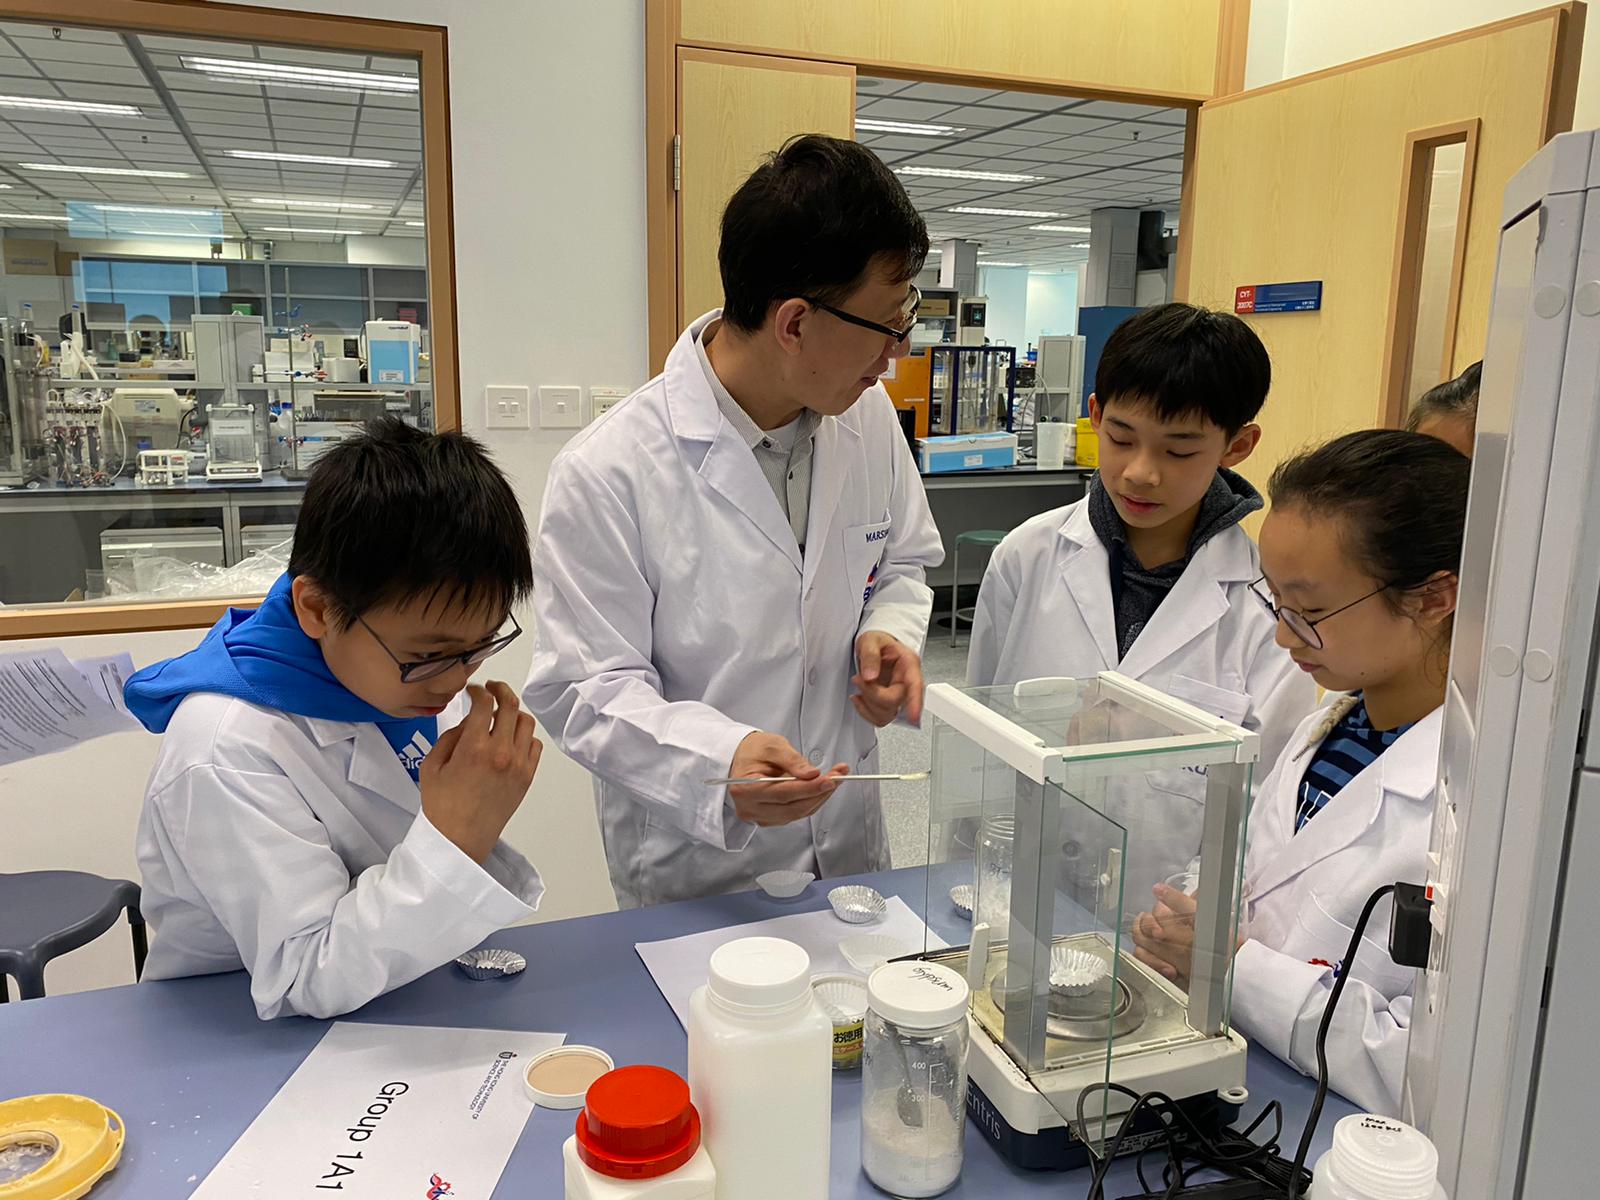 进行实验时，刘教授（左二）会跟学生一边制作食物，一边引导他们思考背后的科学原理。